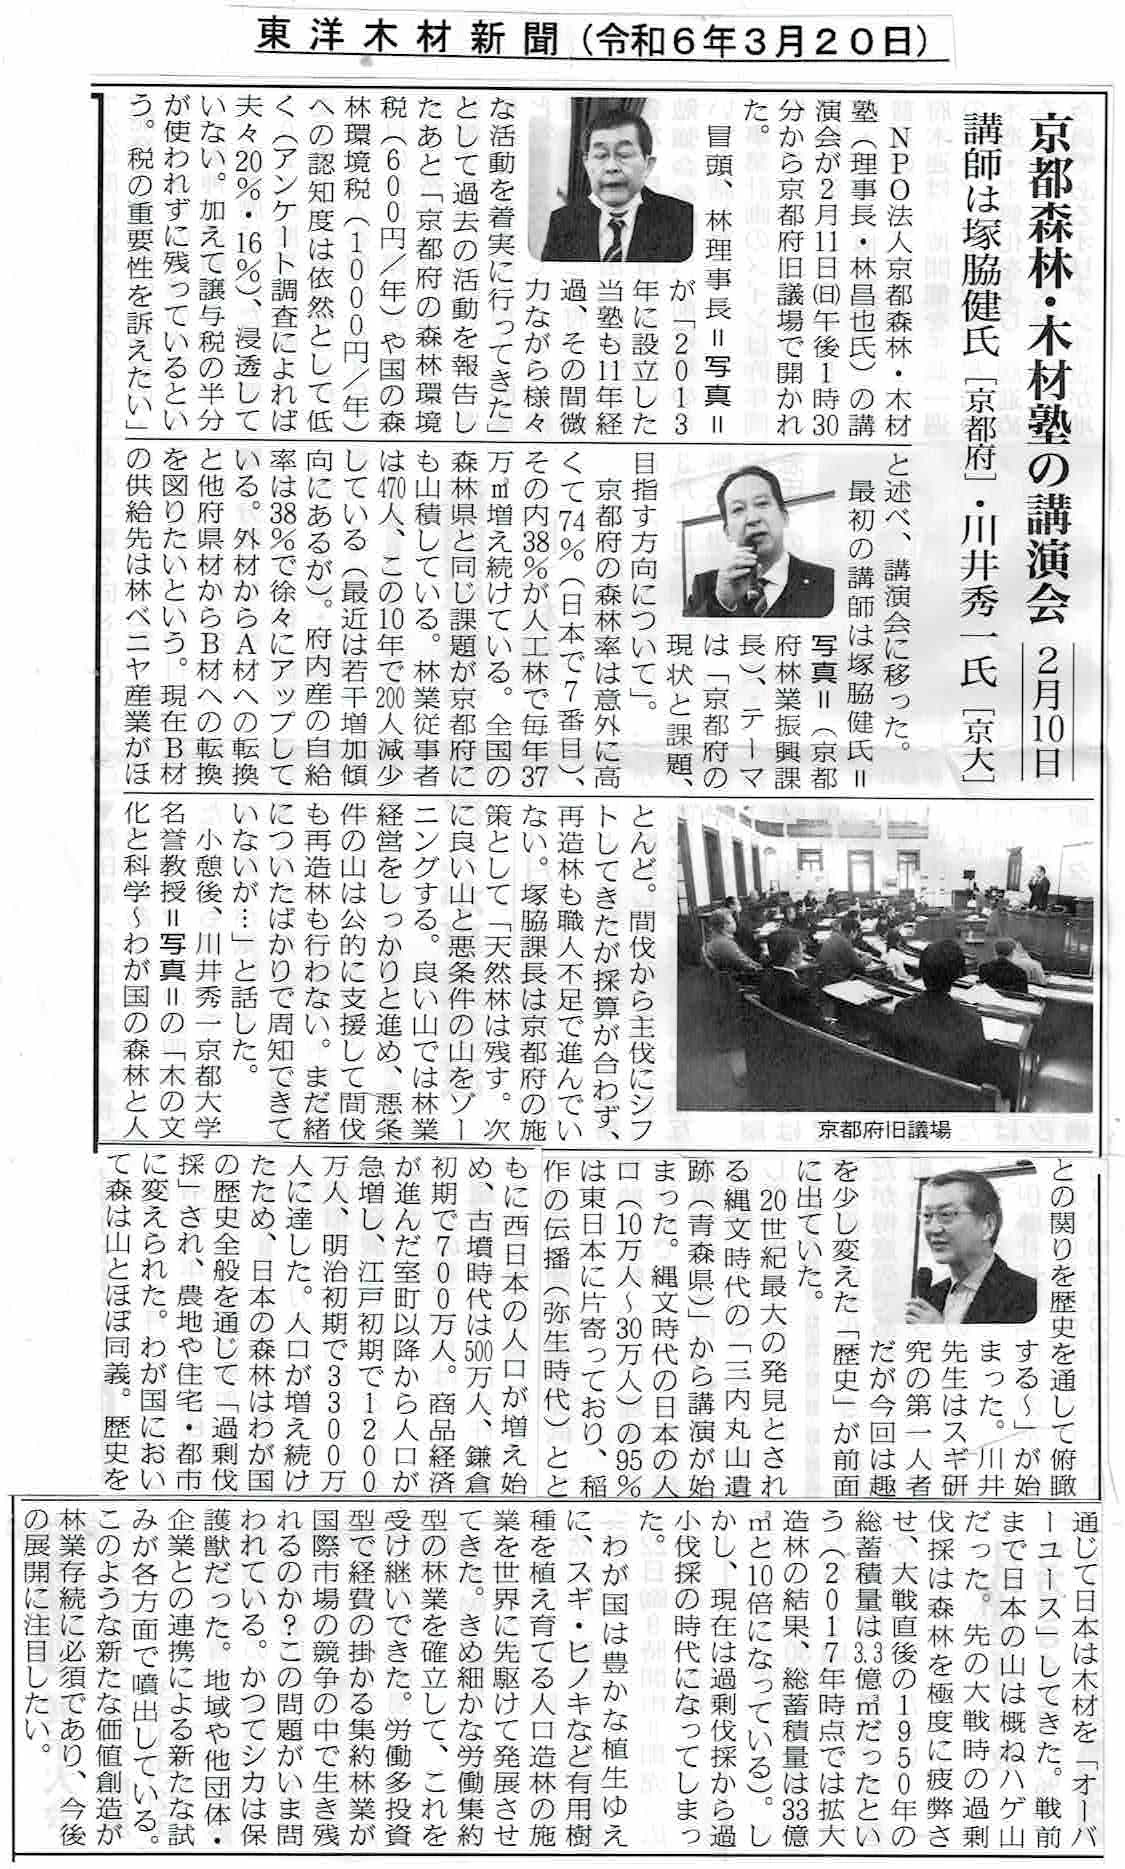 登用木材新聞 令和6年3月20日 京都森林木材塾の講演会についての記事。